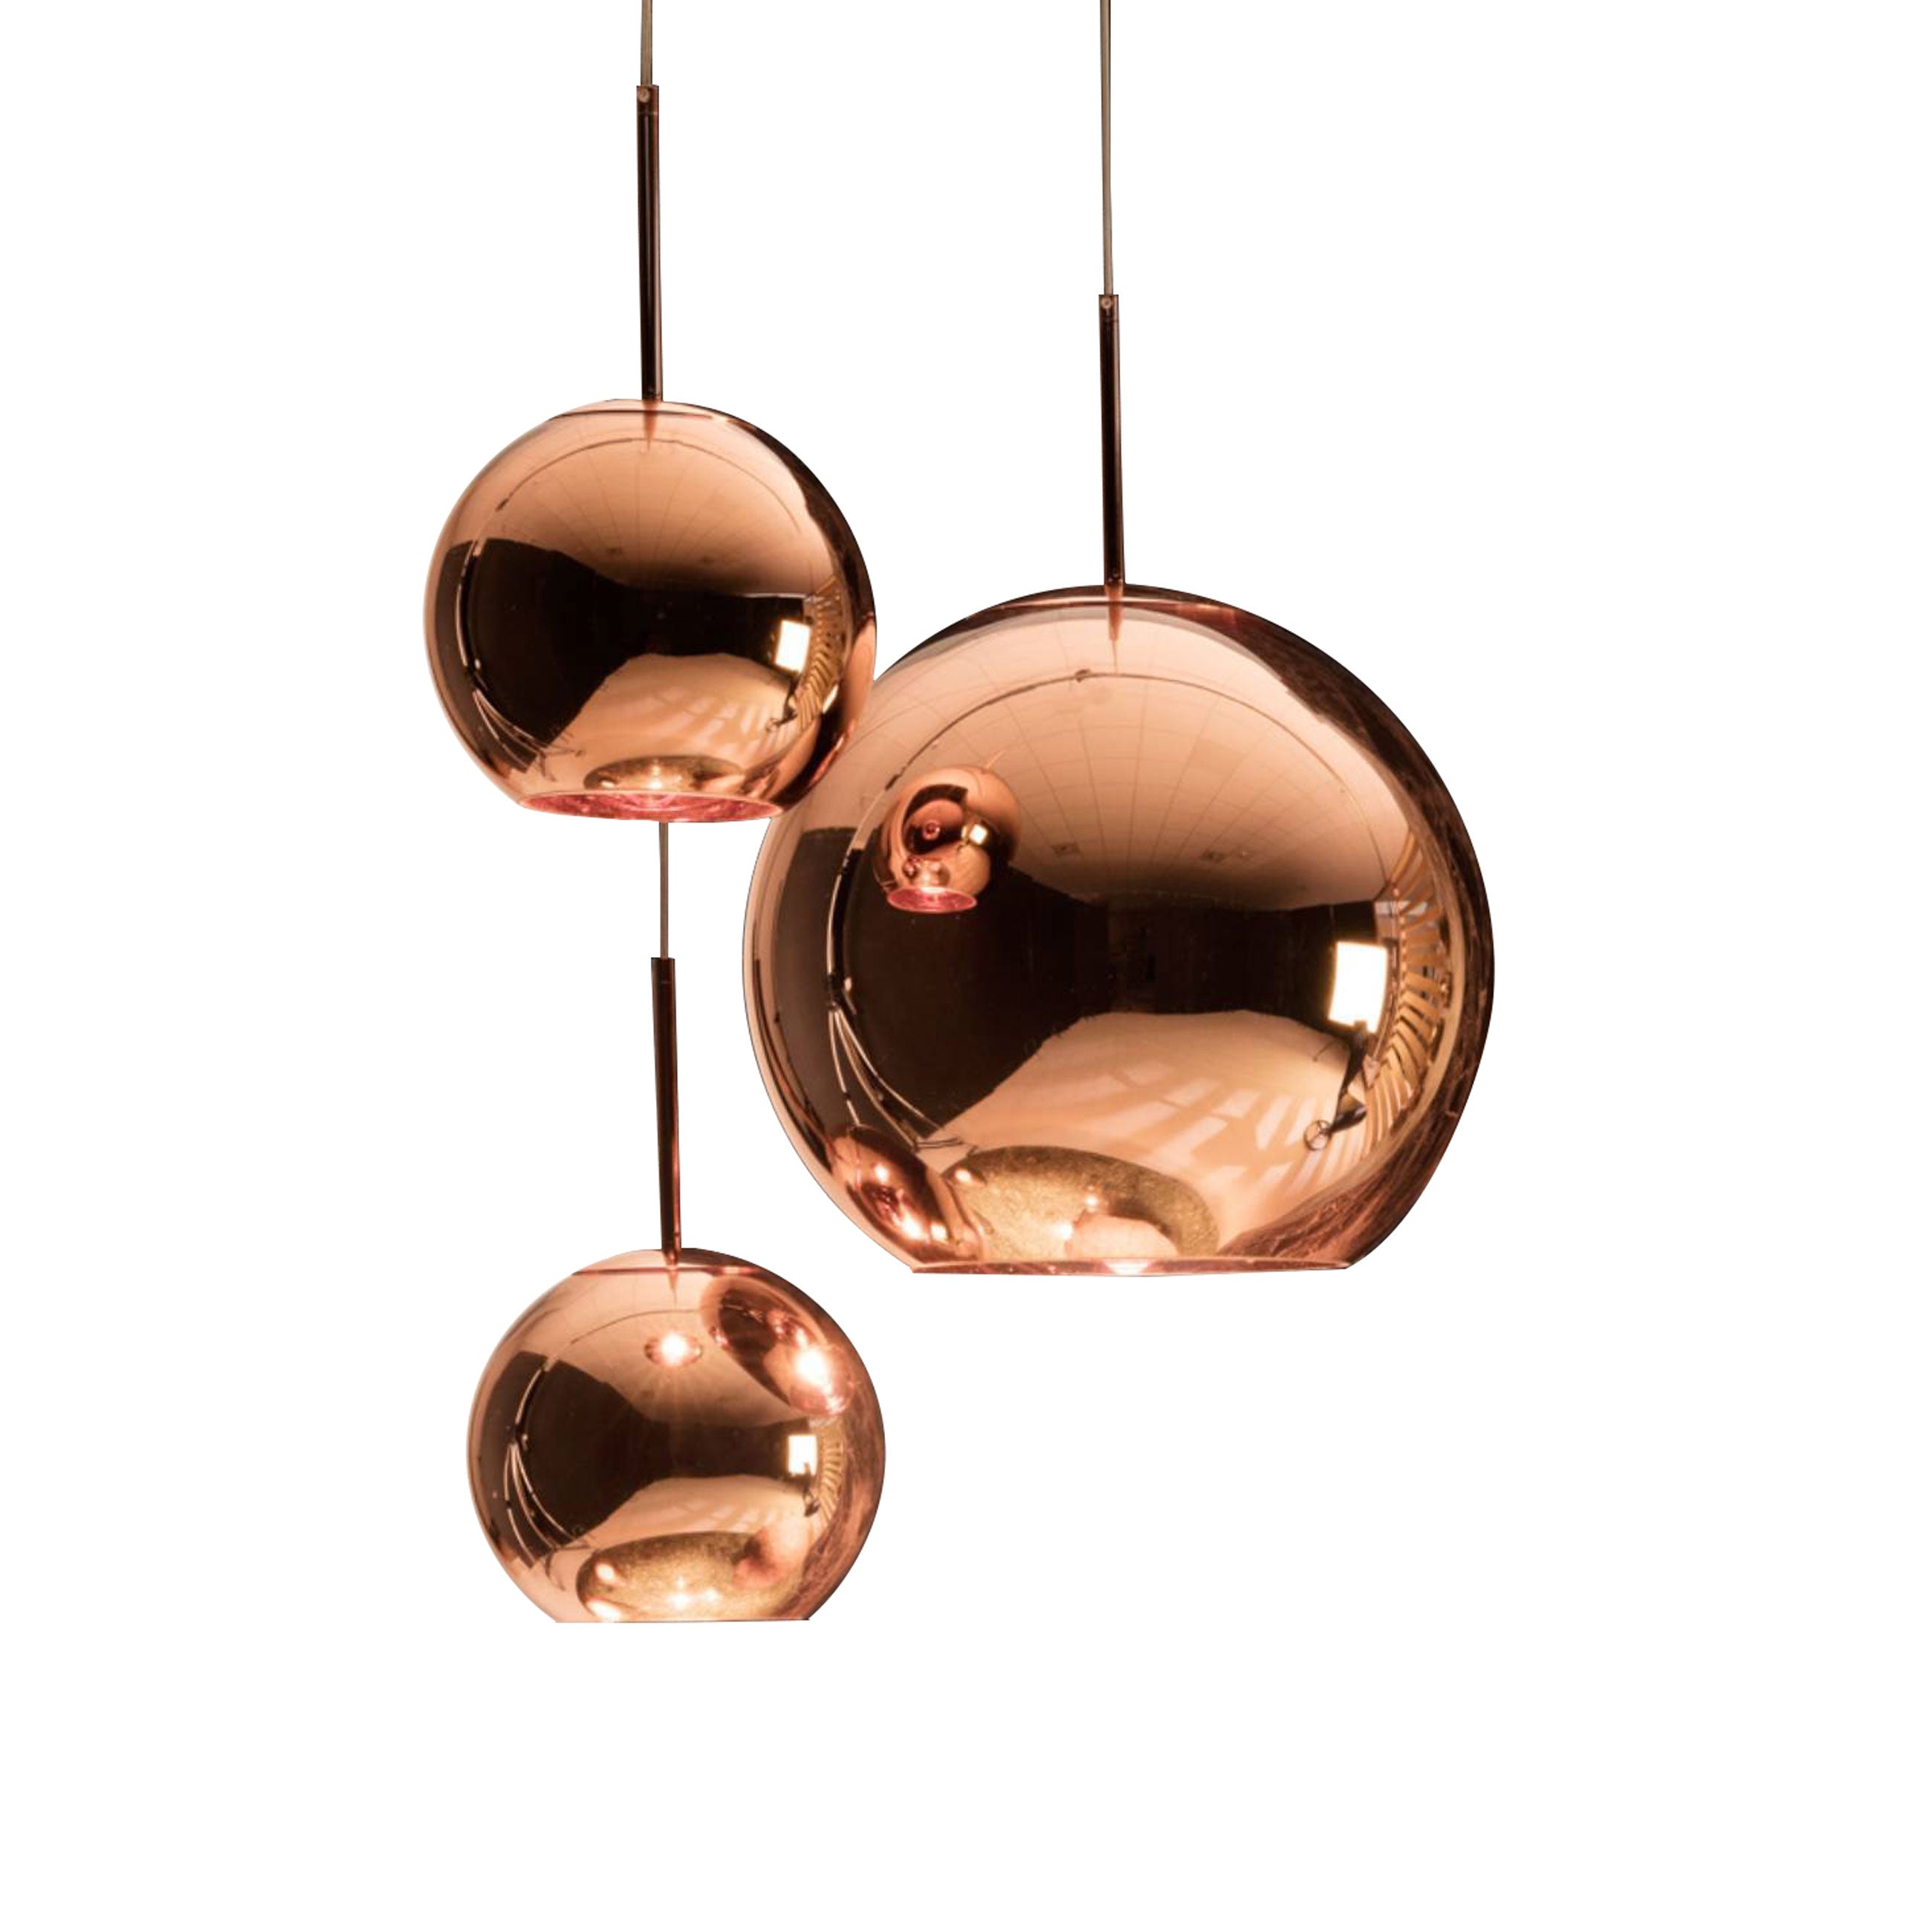 Trække på Integrere Badekar Copper Trio Round Pendant System | Buy Tom Dixon online at A+R